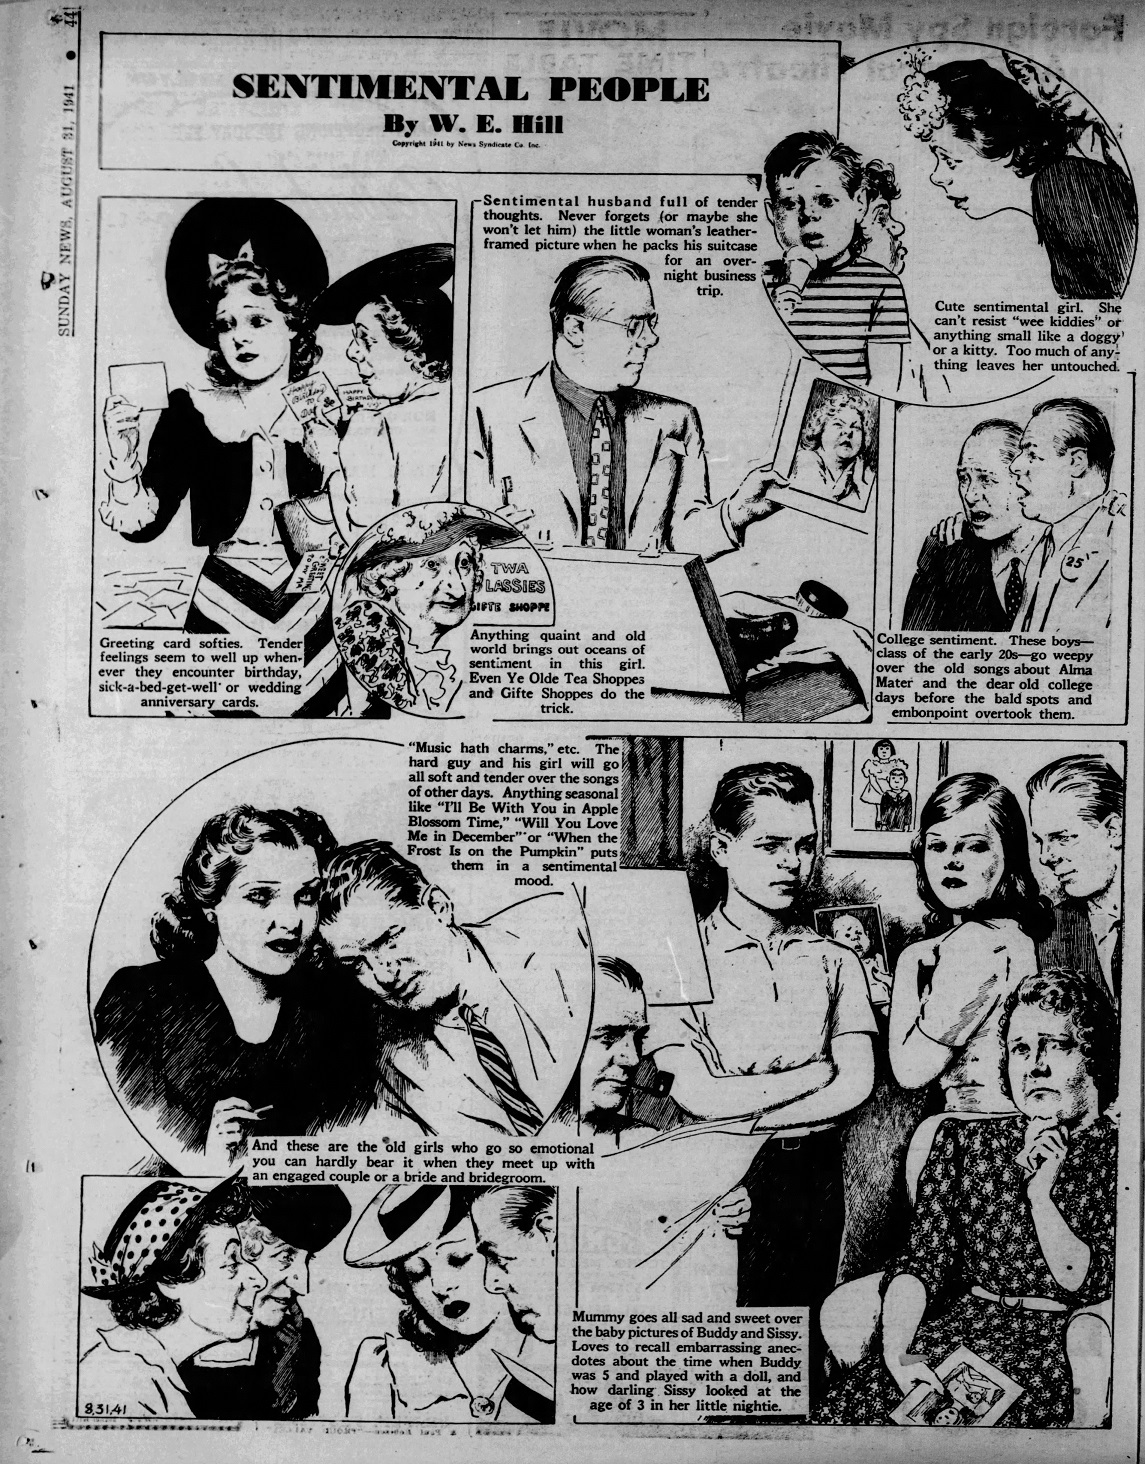 Daily_News_Sun__Aug_31__1941_(1).jpg